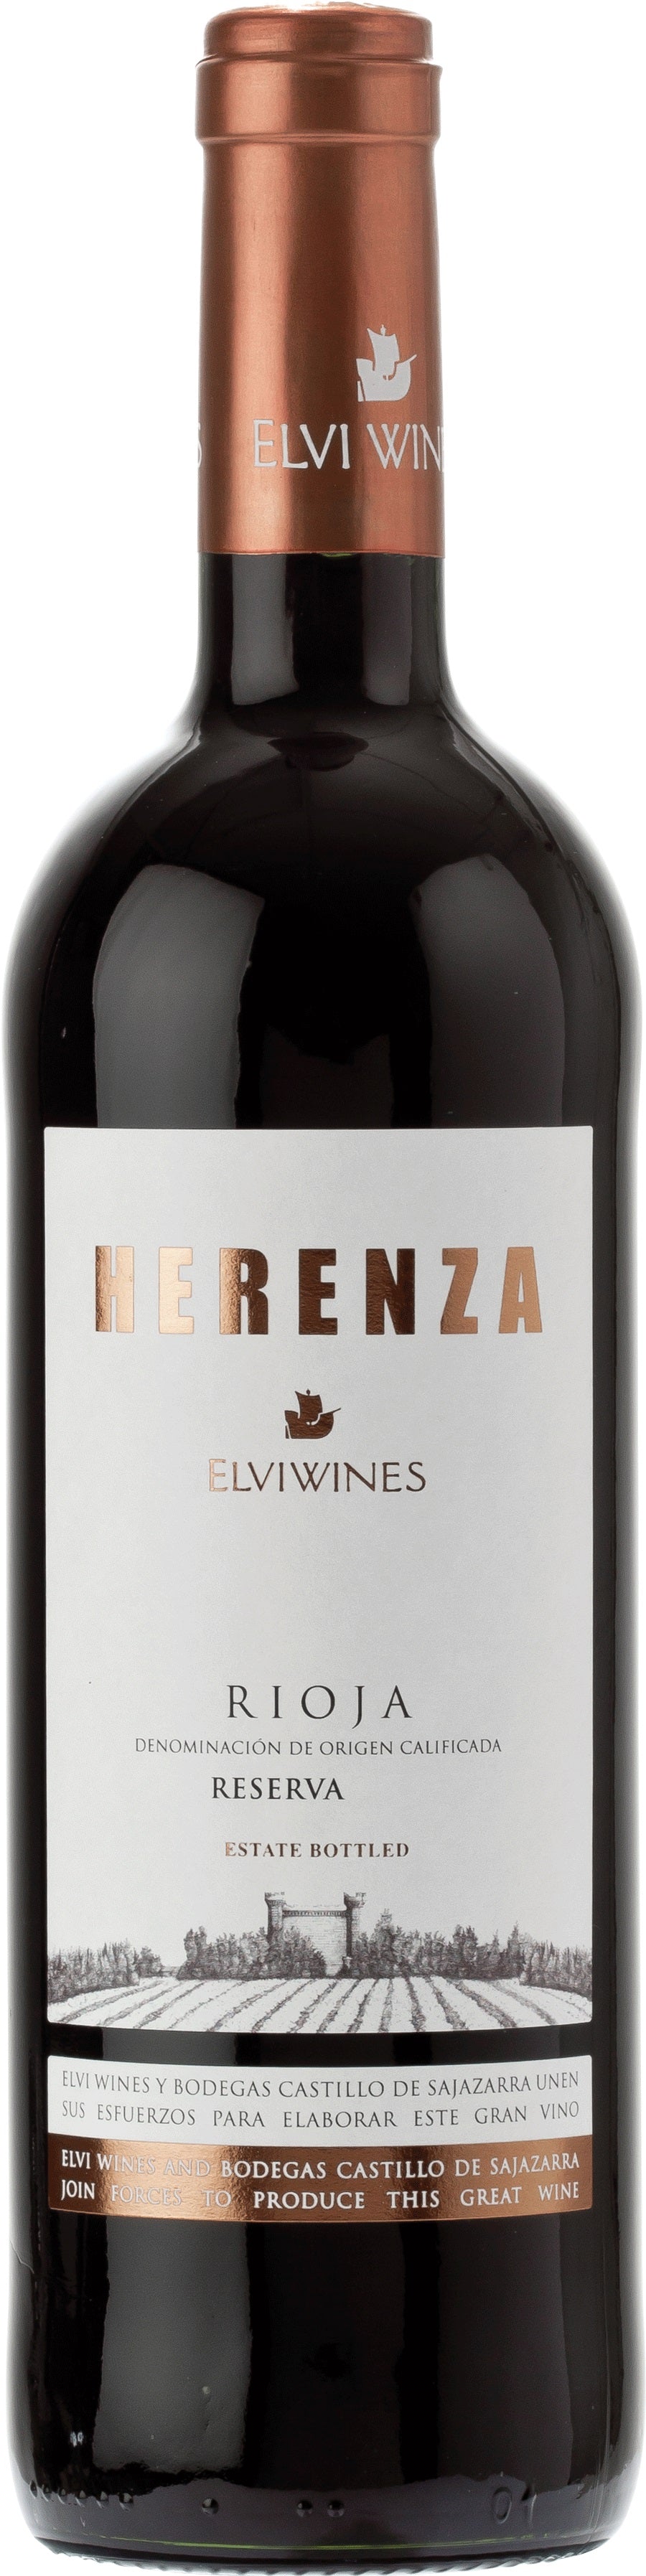 Elvi Wines Rioja Reserva Herenza 2016